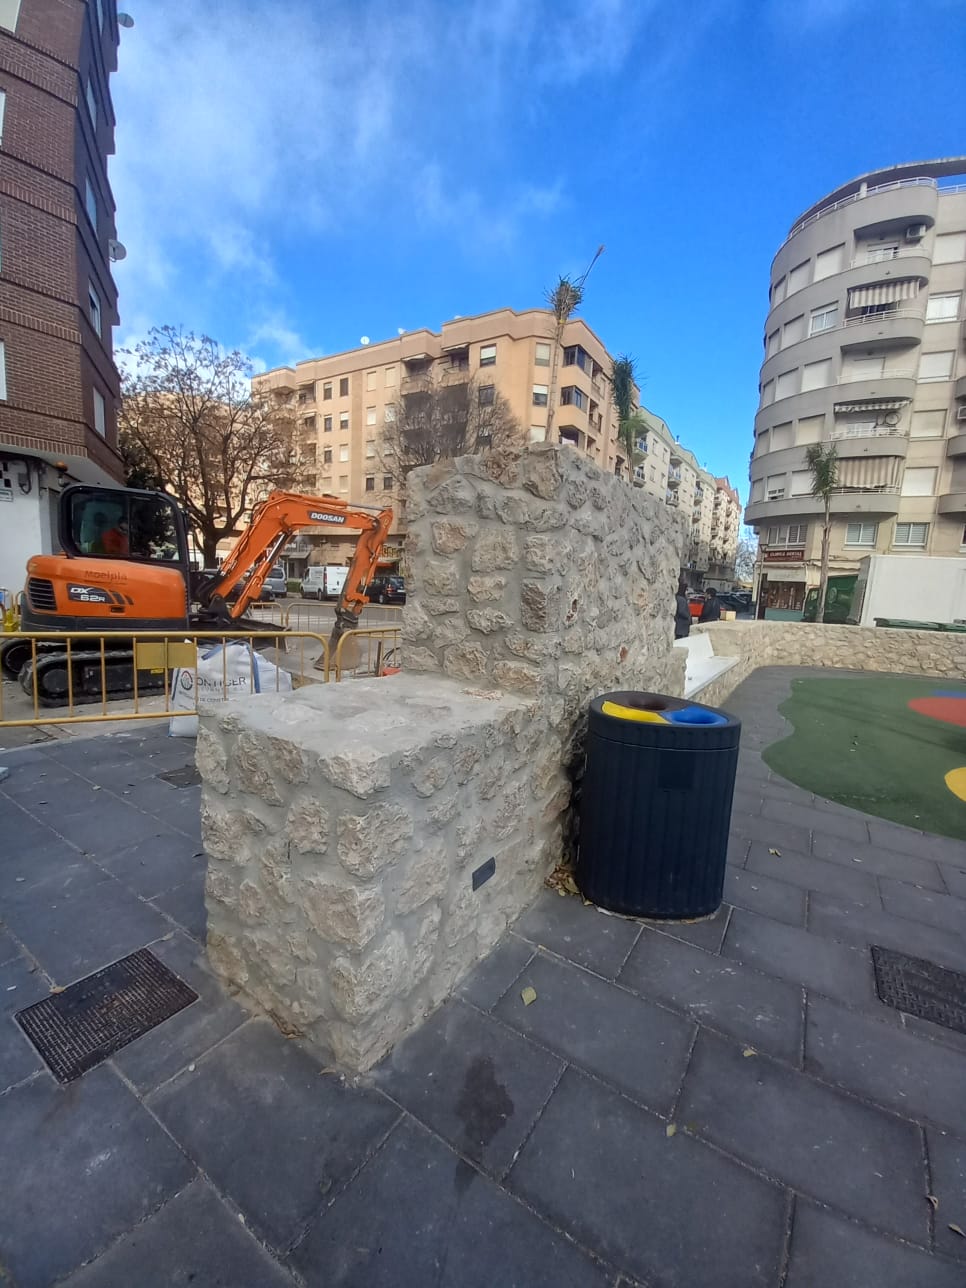 Projecte Oliva denuncia que les obres del parc de l’Avinguda de València encara no han sigut recepcionades